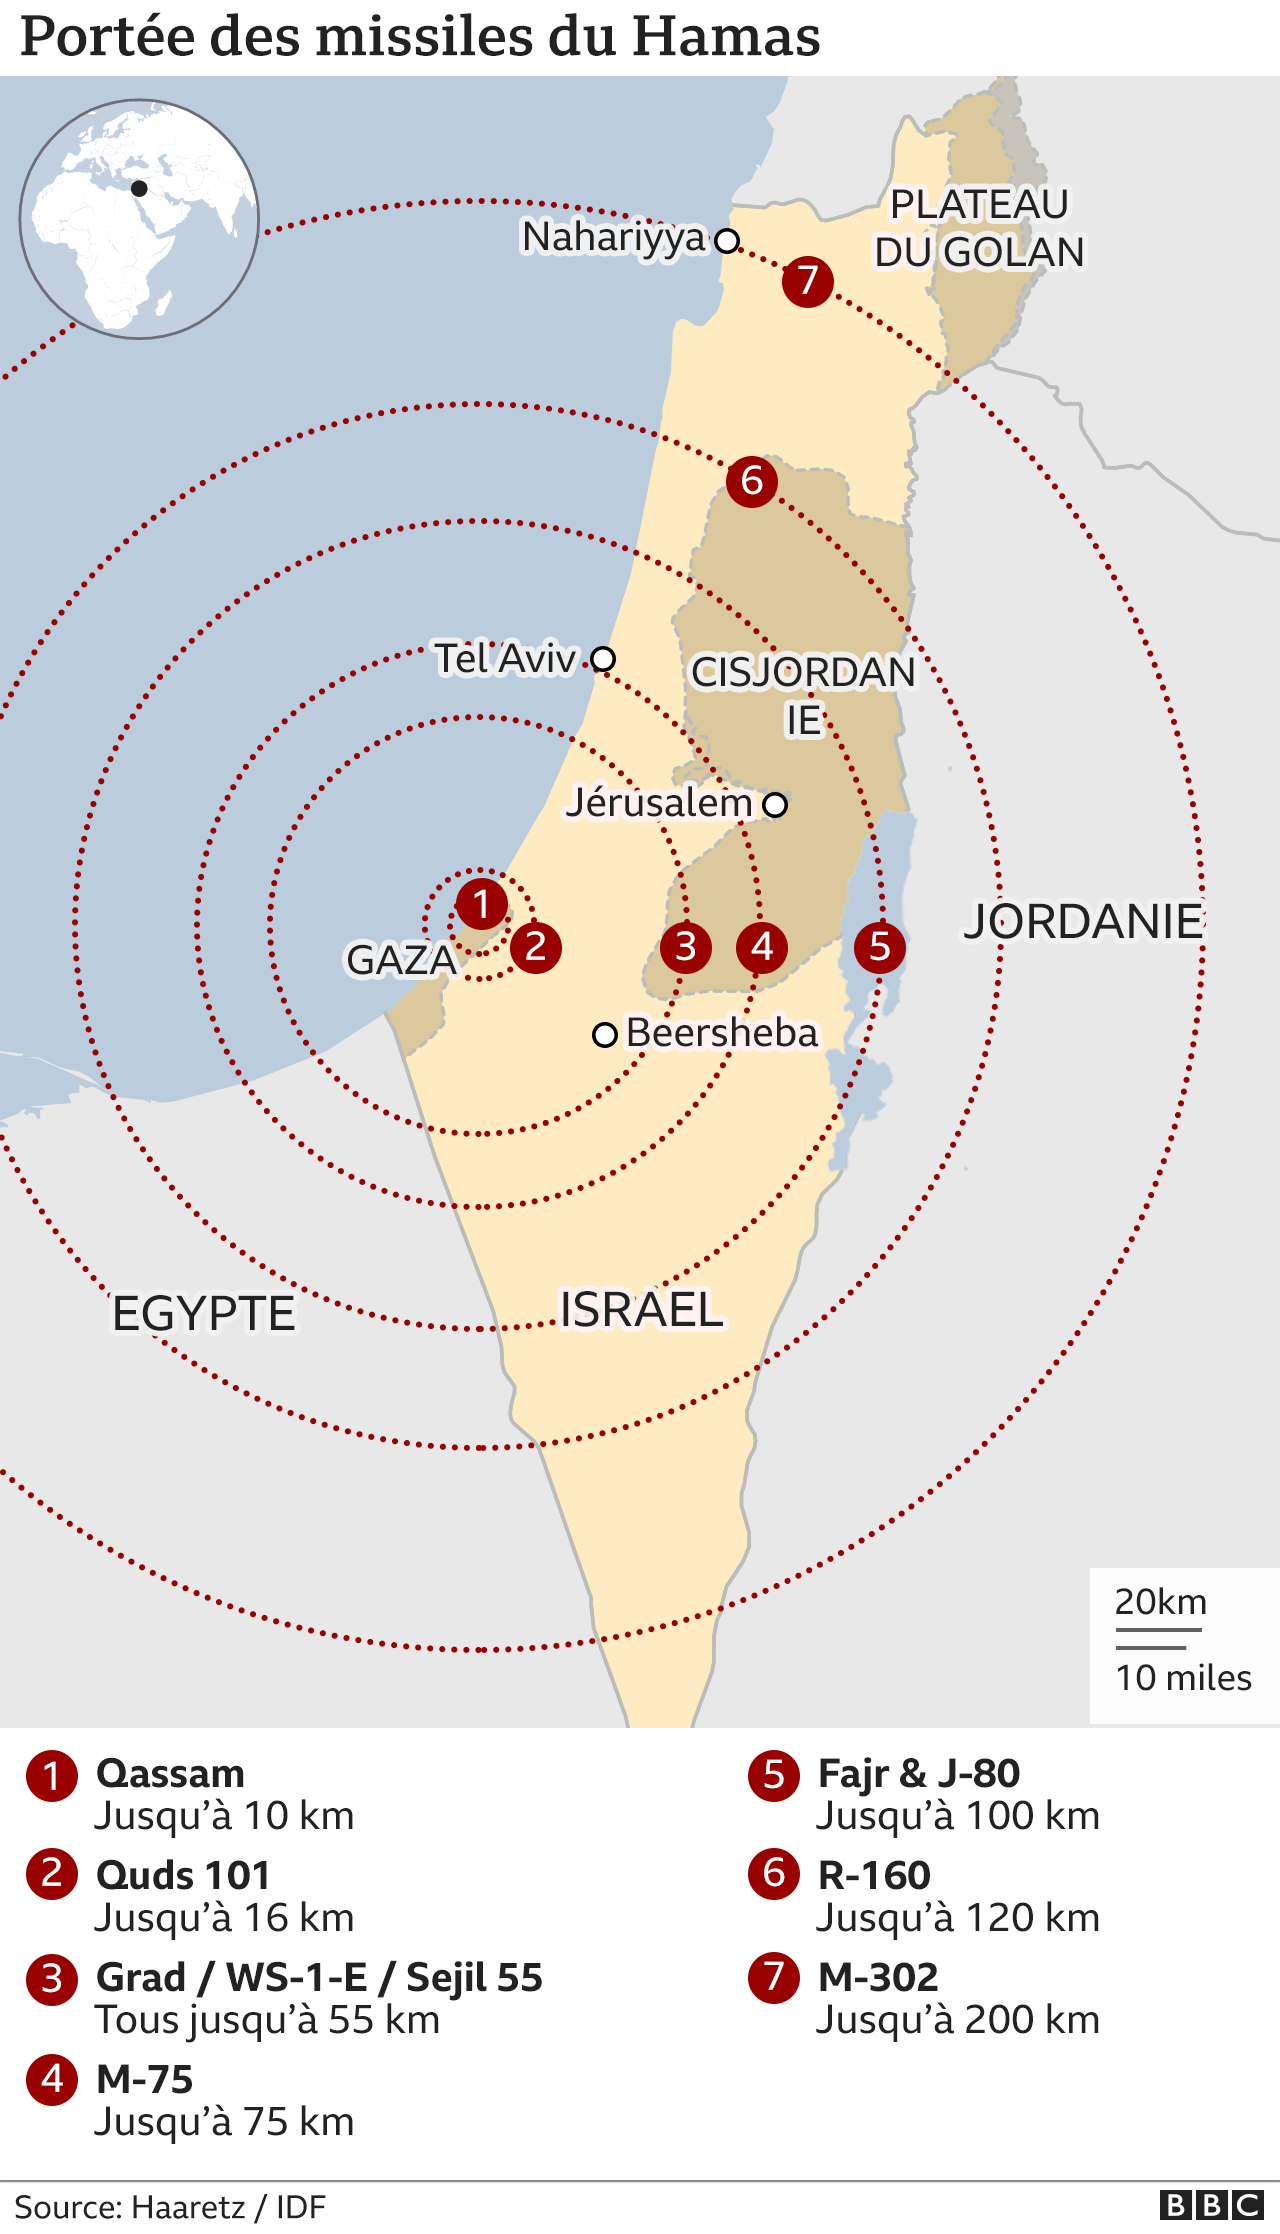  118508891 Israel Gaza Hamas Missile Ranges Afrique 2x640 Nc 